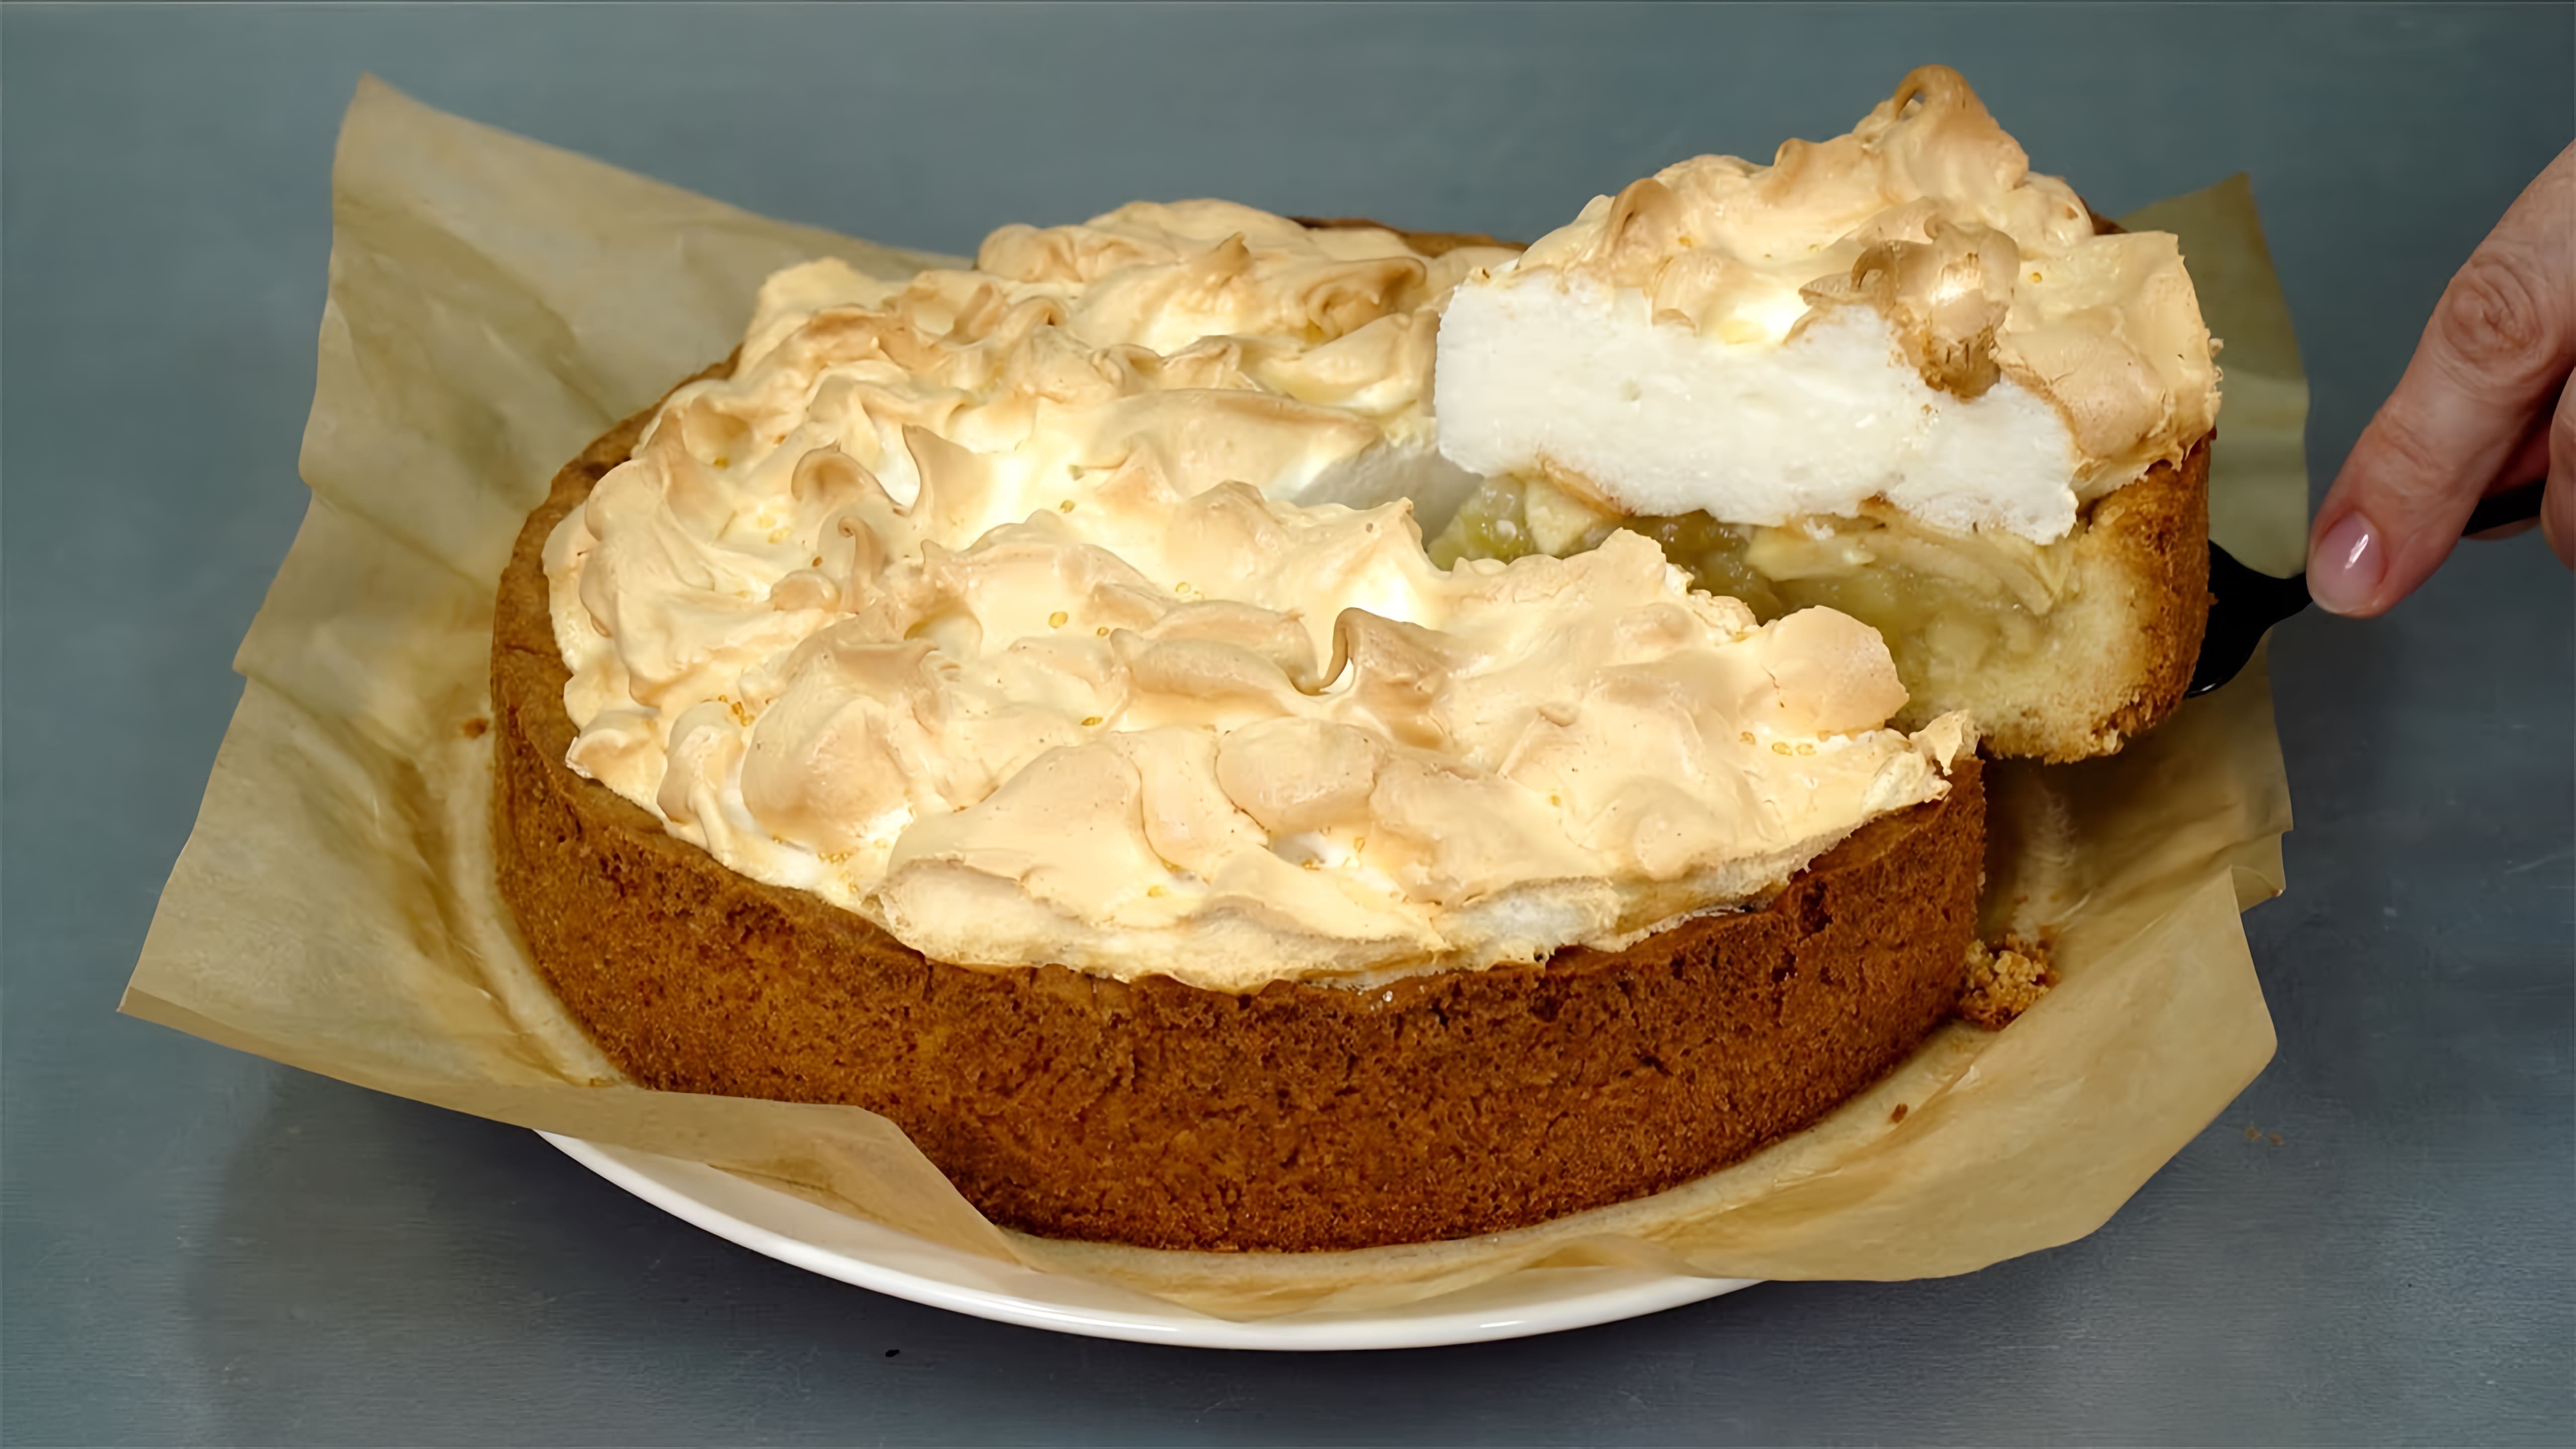 Видео рецепты для трех различных видов яблочных пирогов - пирог с простым йогуртовым коржом, пирог с меренгой и коротким слоеным тестом, а также индивидуальный пирог с творожным тестом